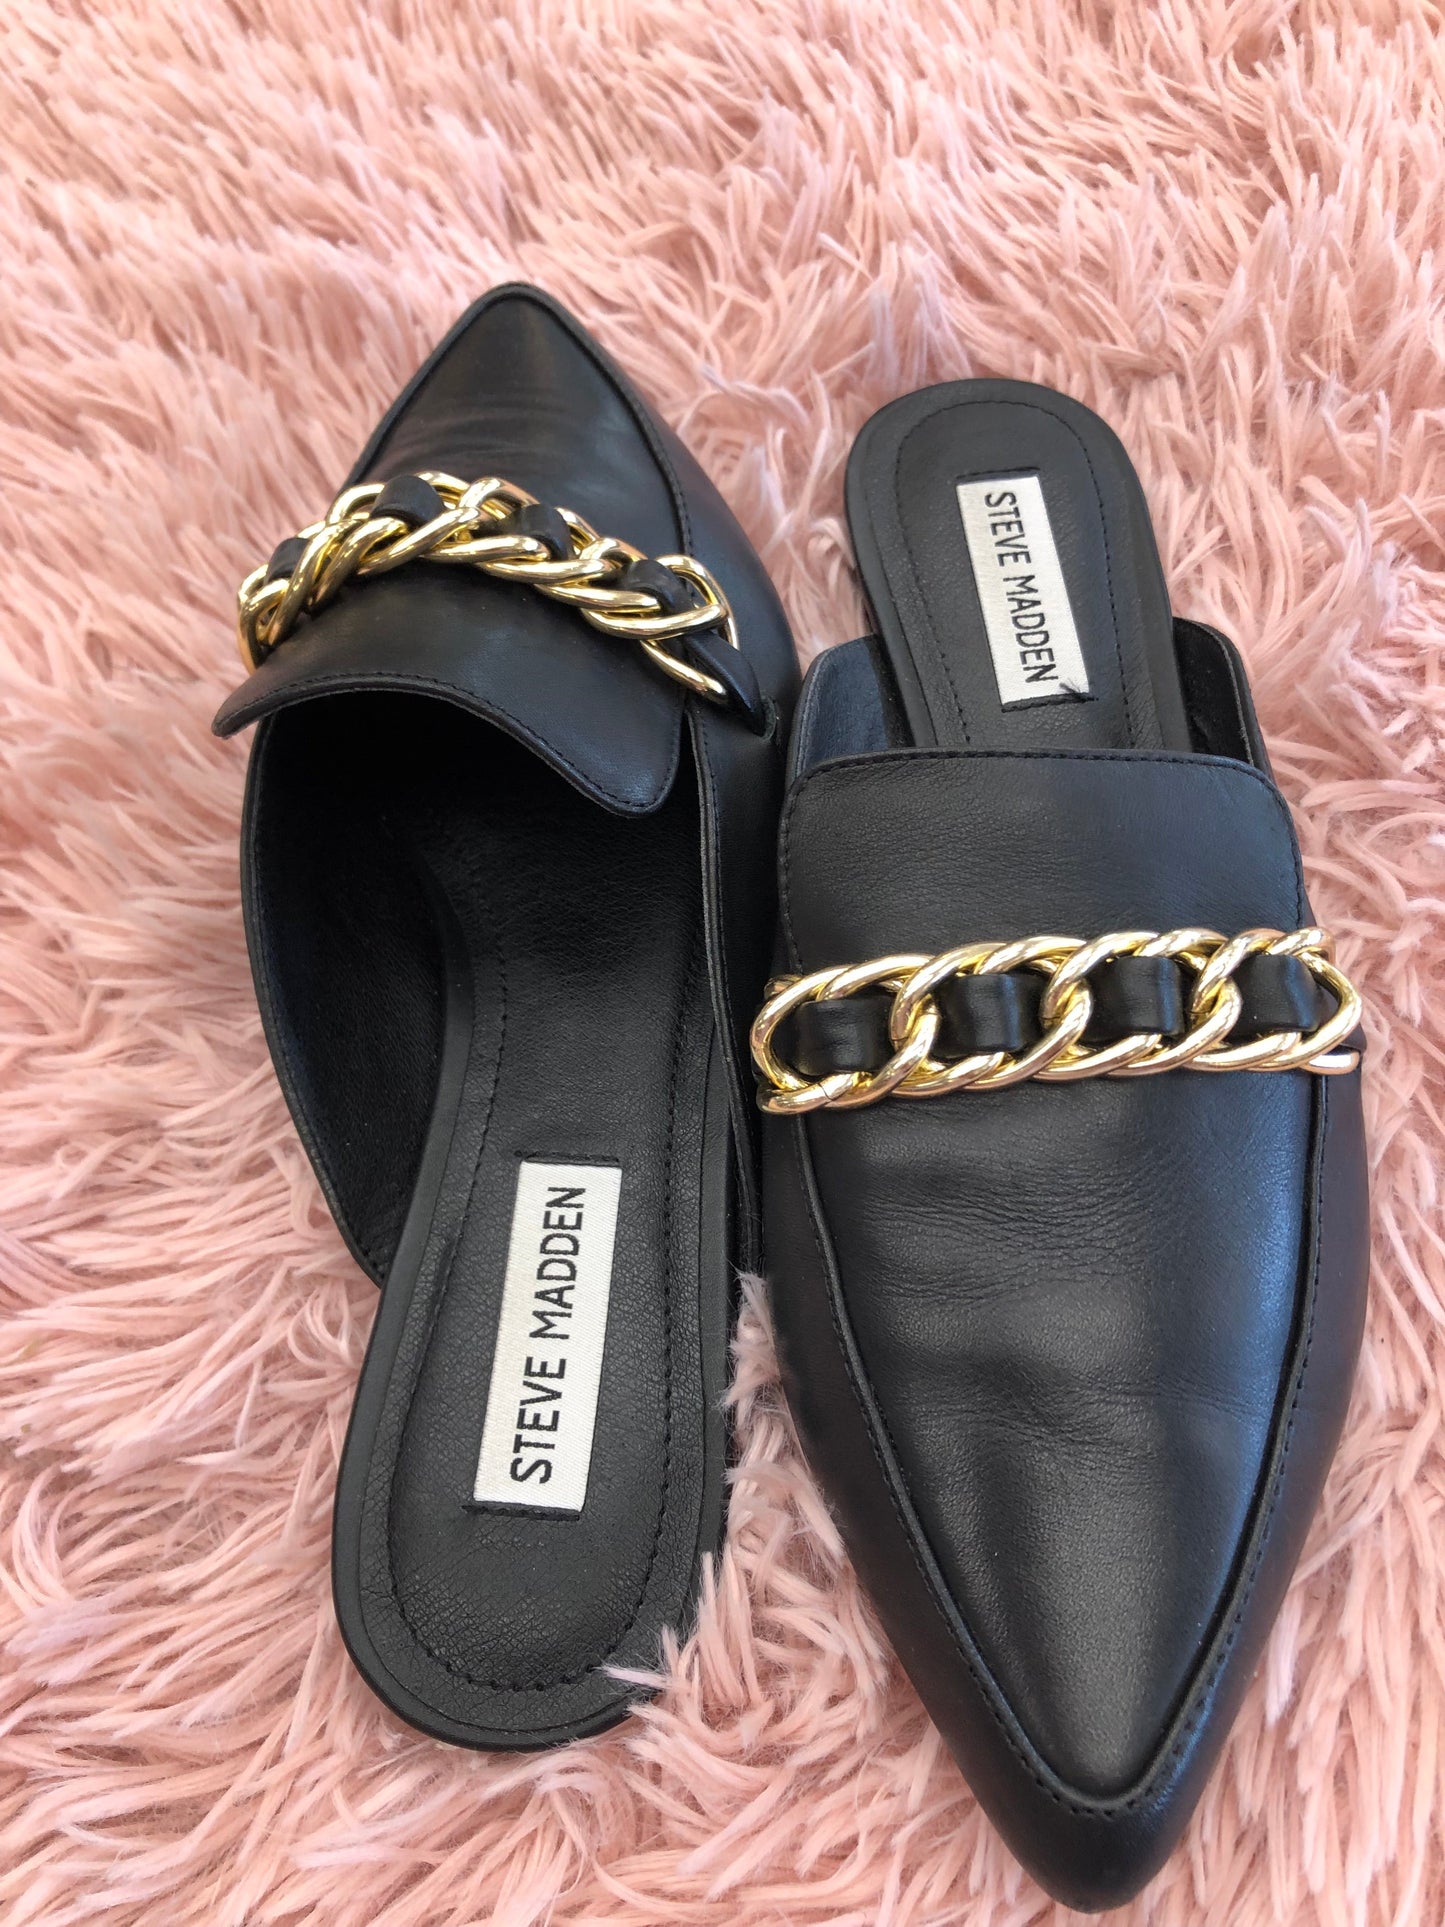 Black Gold Shoes Flats Mule & Slide Steve Madden, Size 8.5